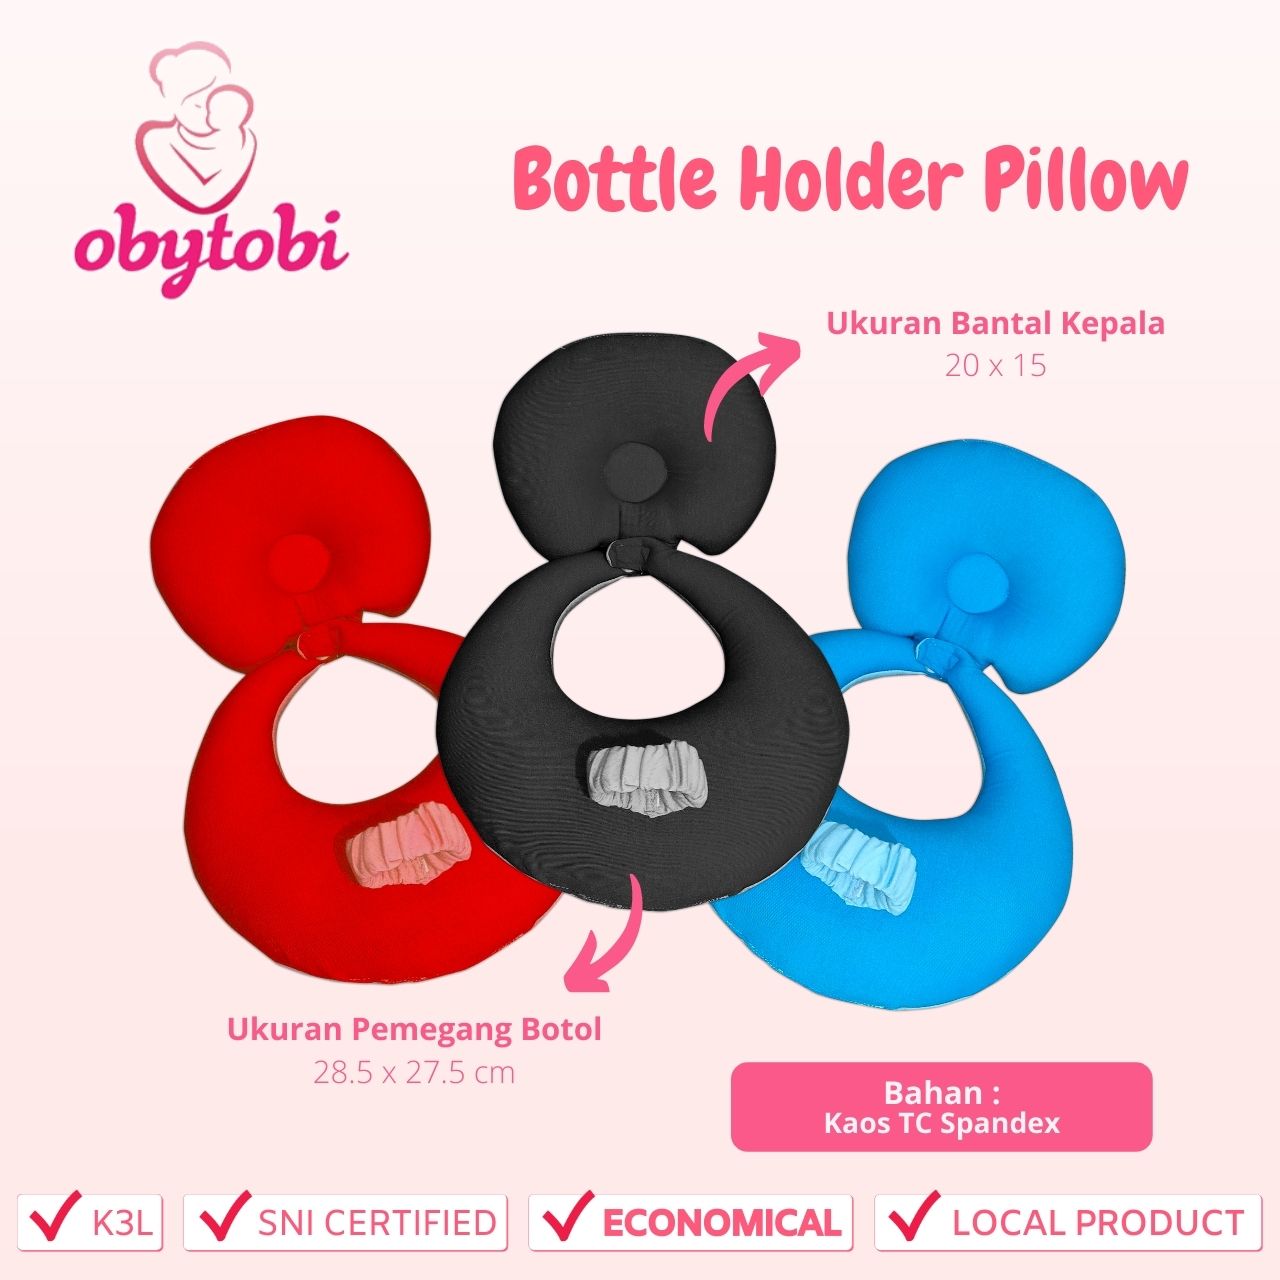 Bottle Holder Pillow Ukuran Obytobi